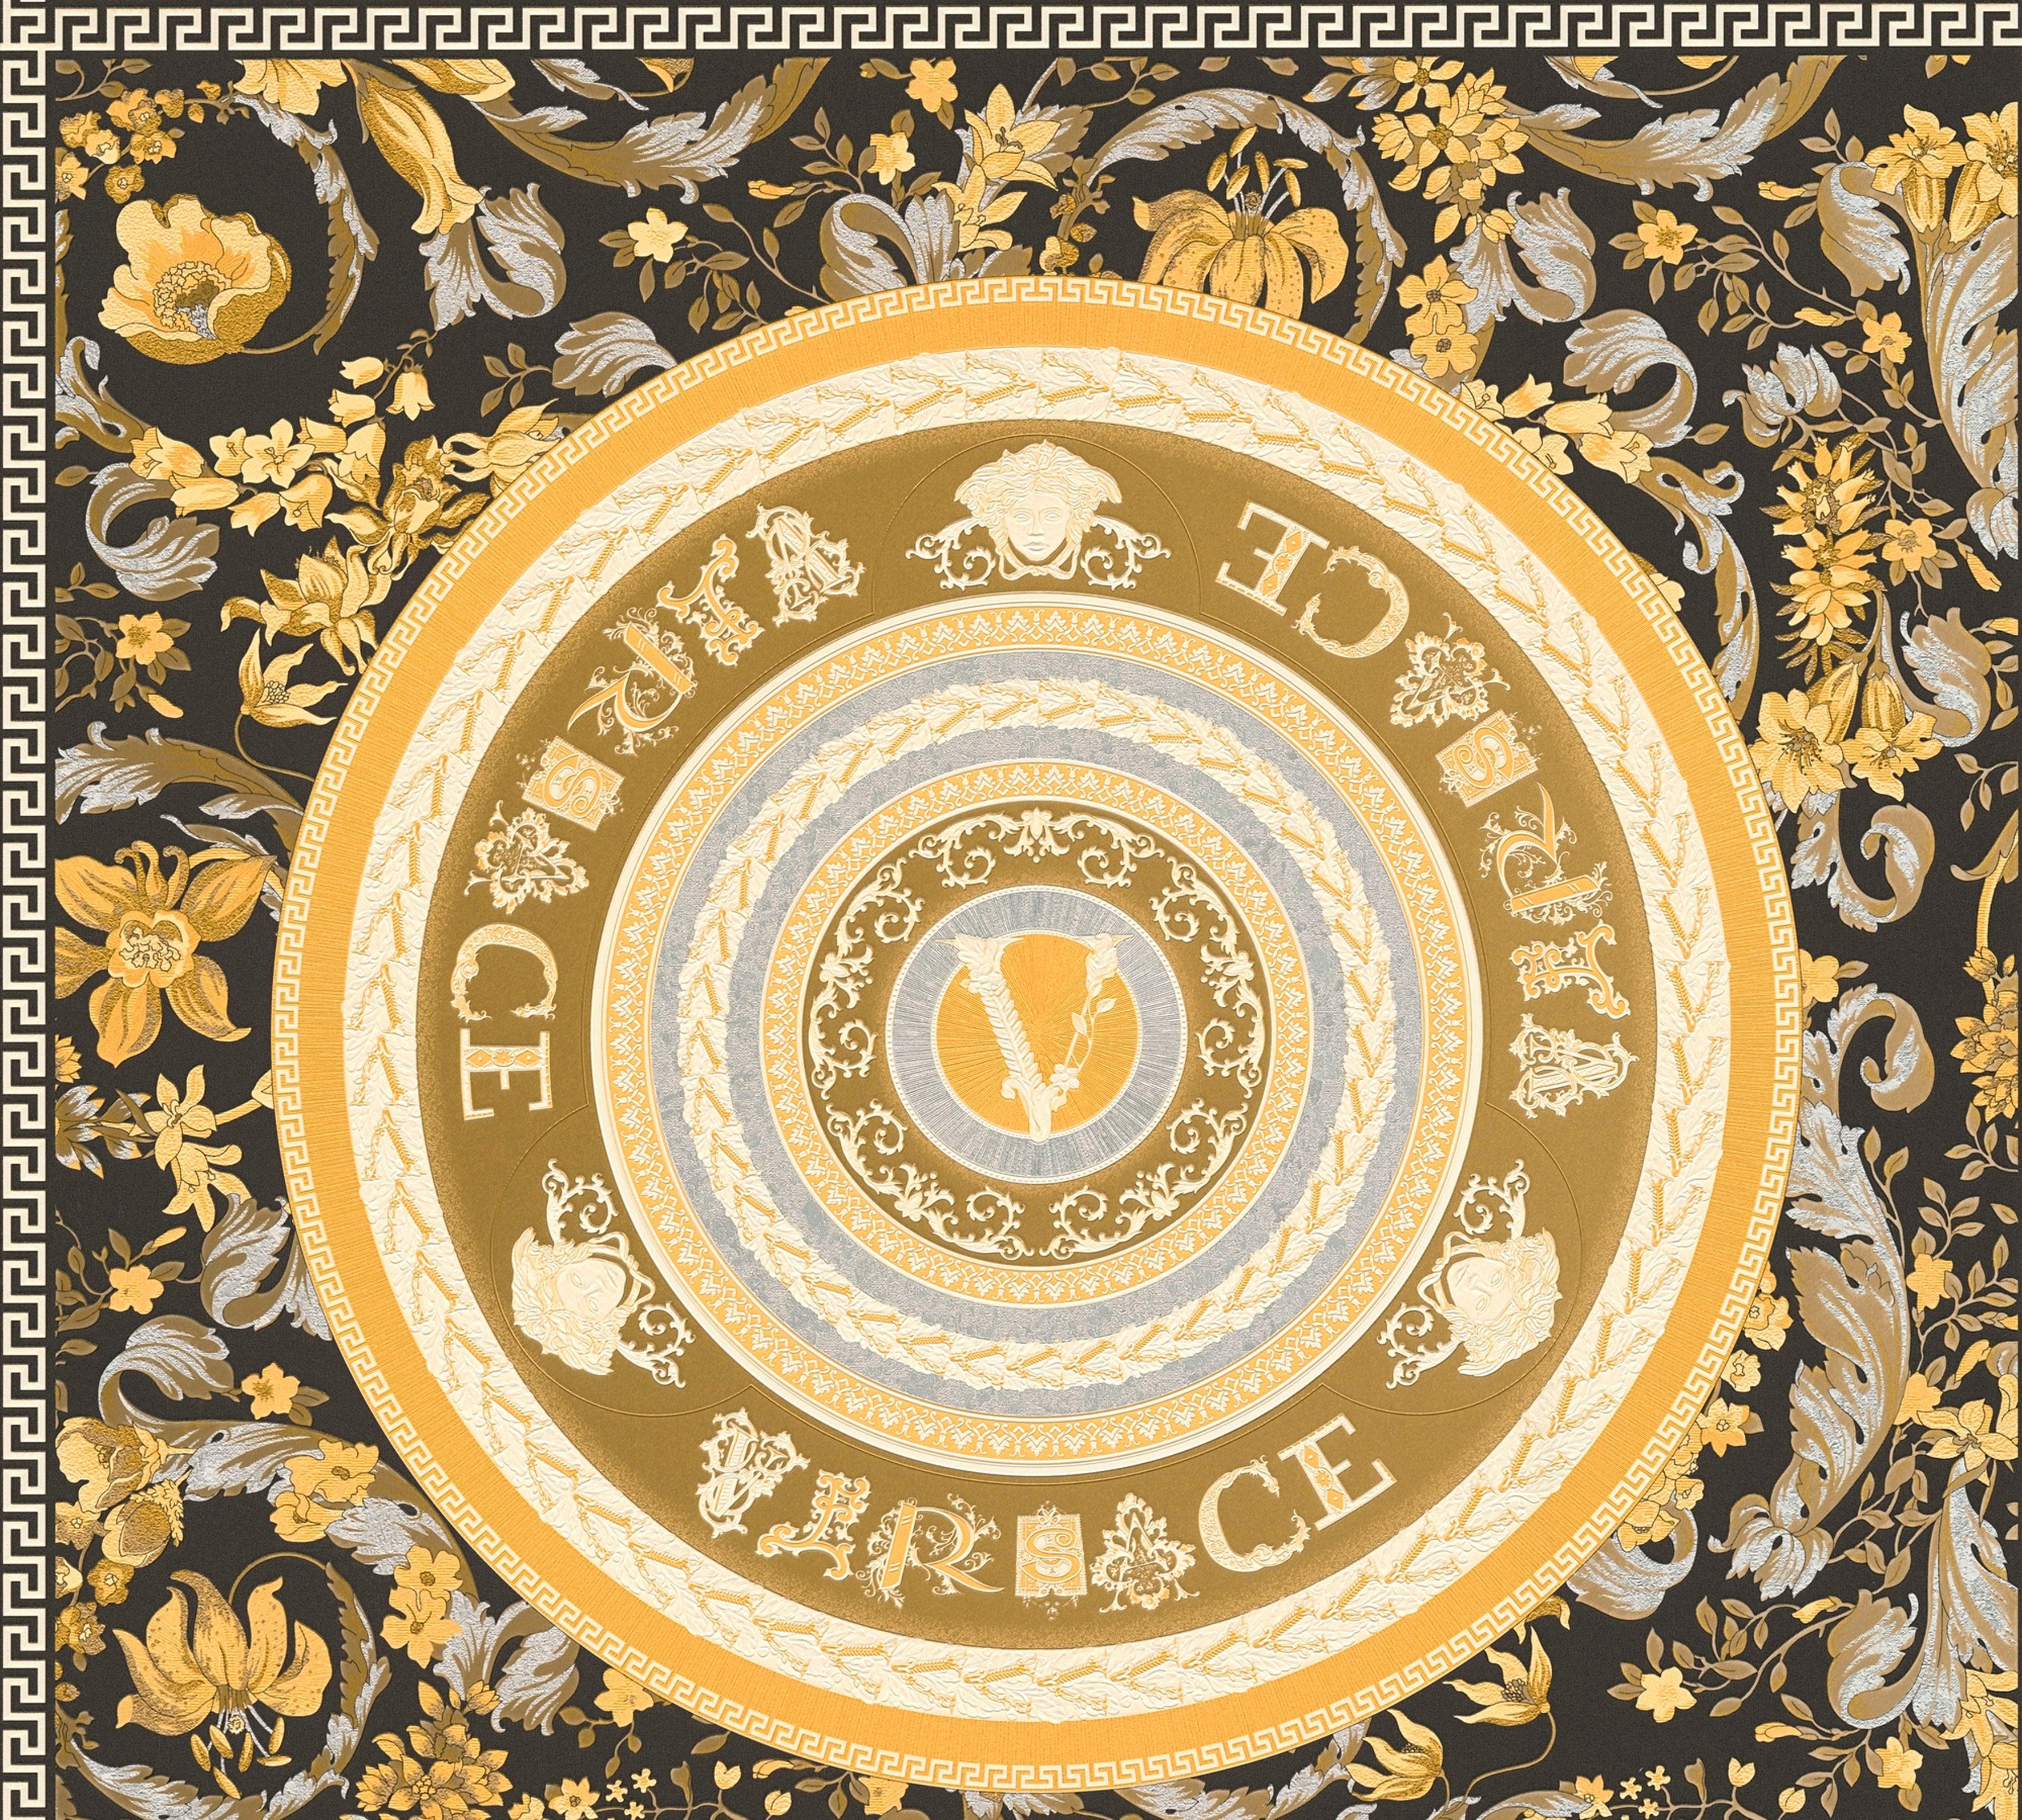 St), Fliesen-Tapete Designertapete, goldfarben/schwarz/silberfarben Wallpaper Floral Versace Versace auffallende Design, leicht 5 glänzend, leicht strukturiert, (1 Vliestapete